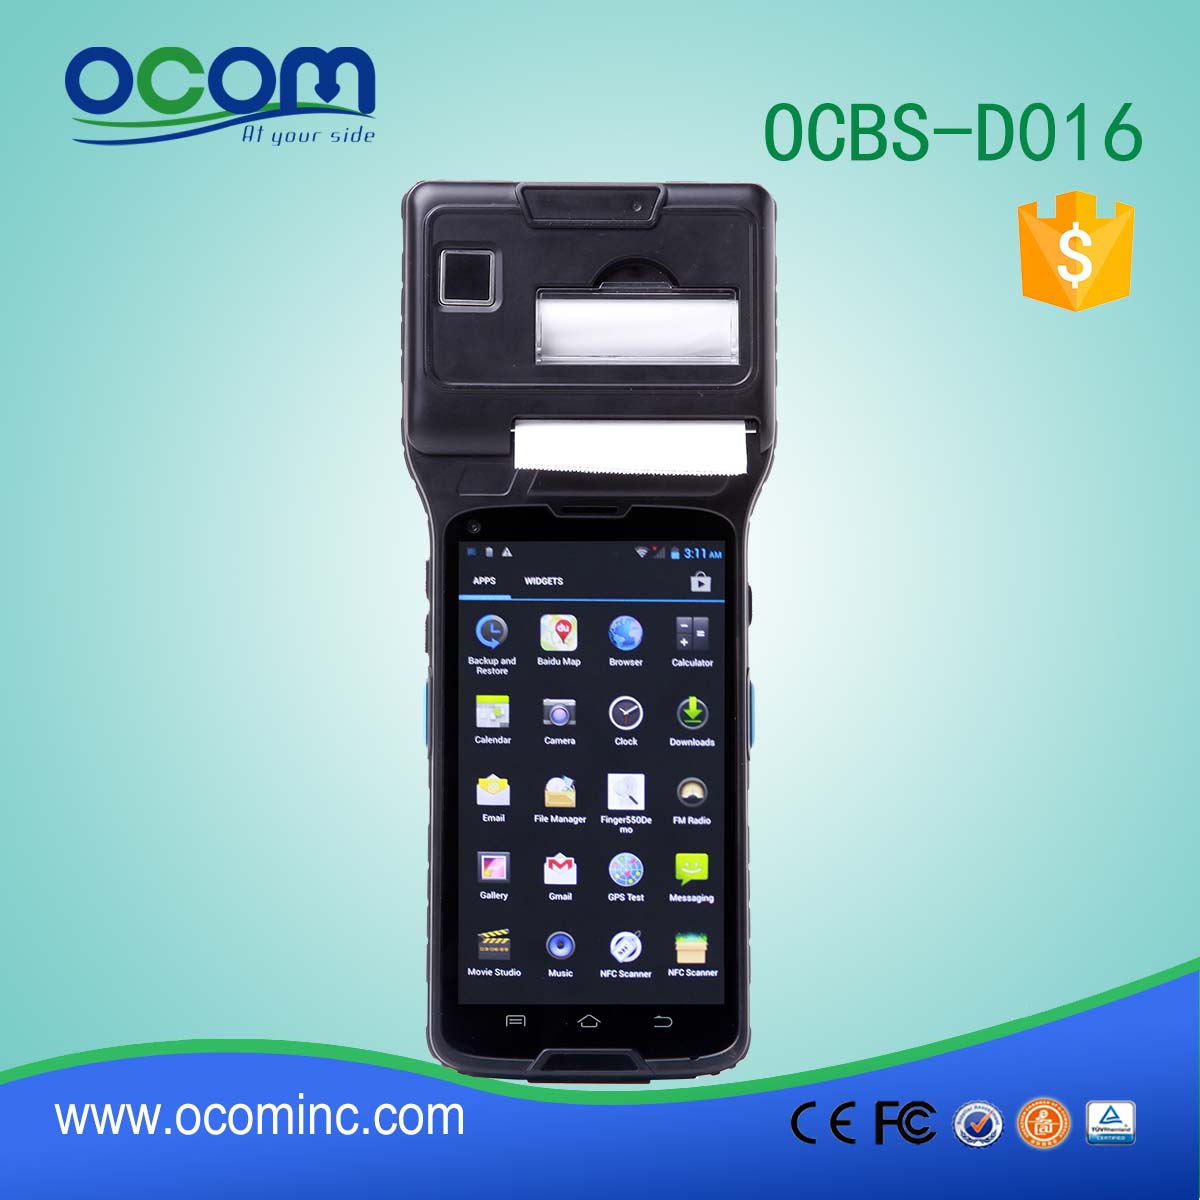 χειρός Android βιομηχανική PDA με το κινητό του εκτυπωτή (OCBs-D016)